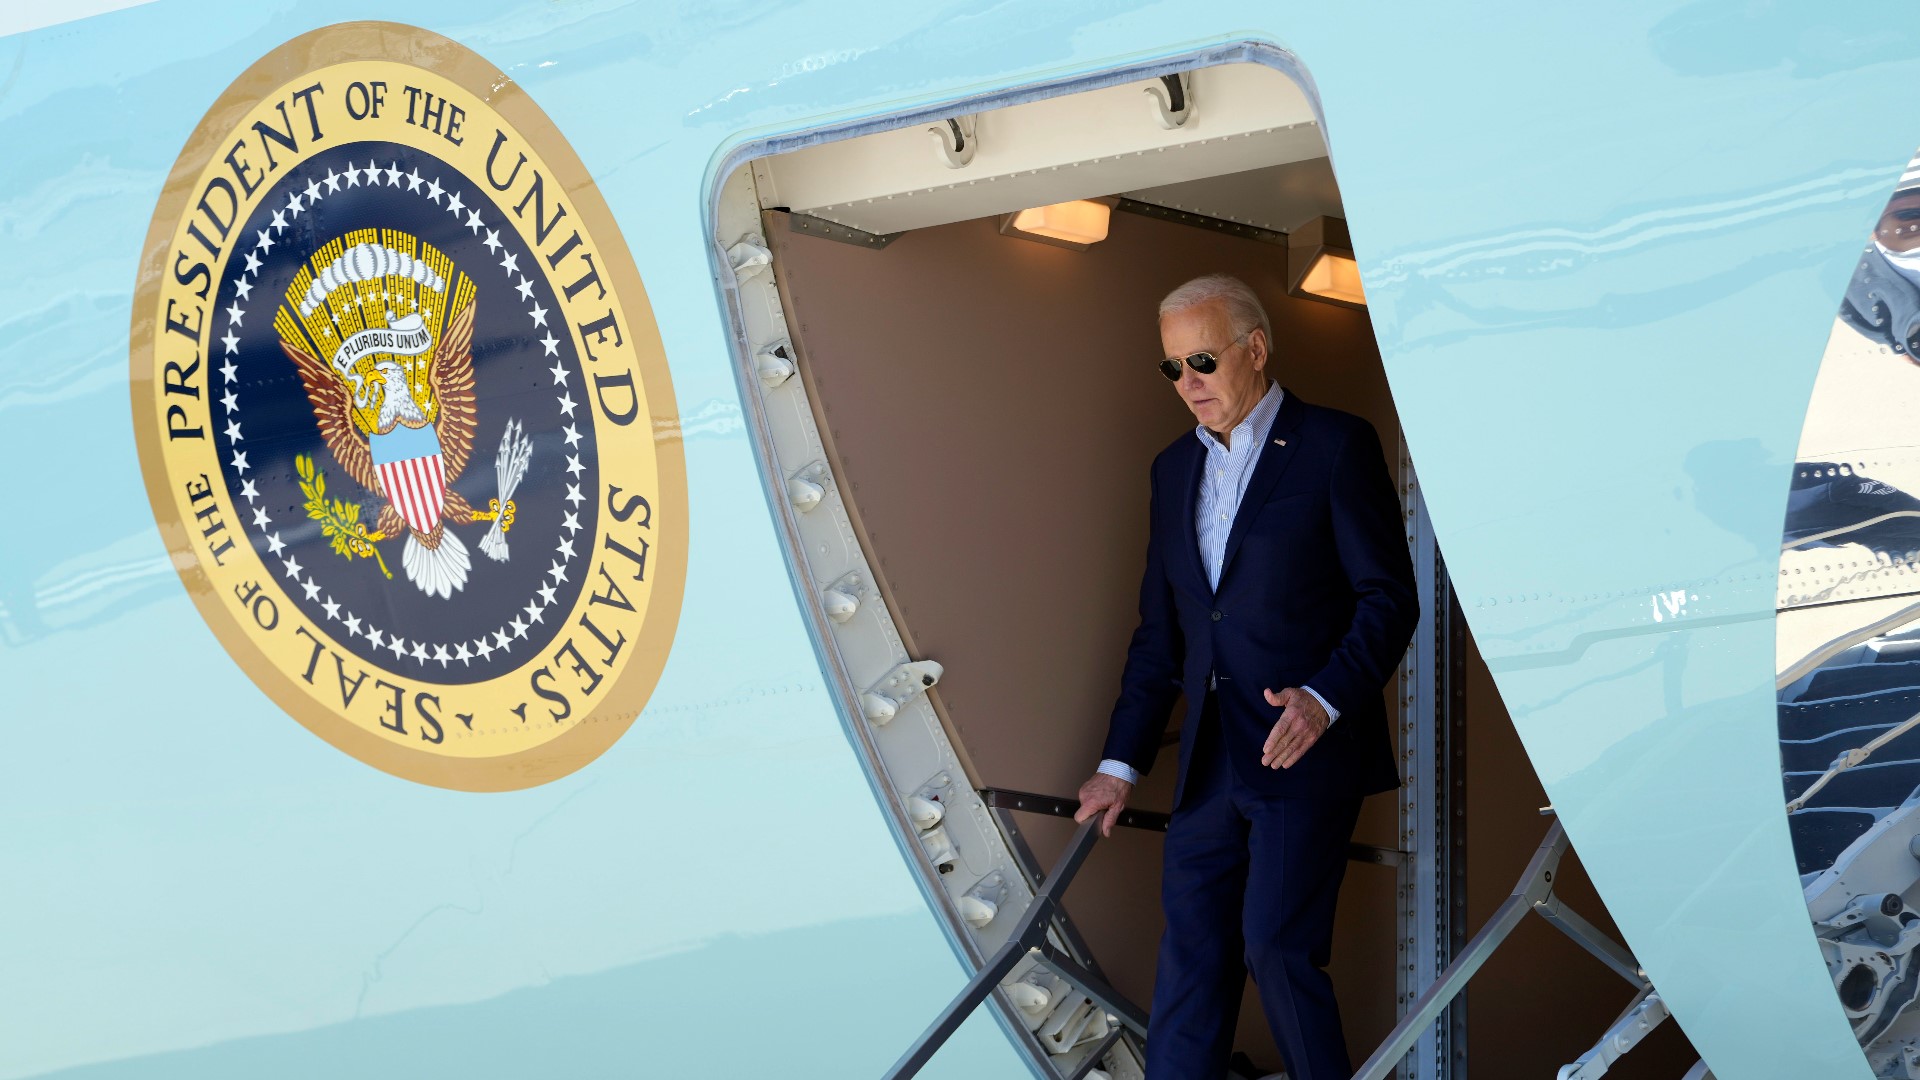 El presidente Joe Biden viene a Dallas para dos eventos de recaudación de fondos de campaña, y es probable que la seguridad en torno a la visita afecte el tráfico.